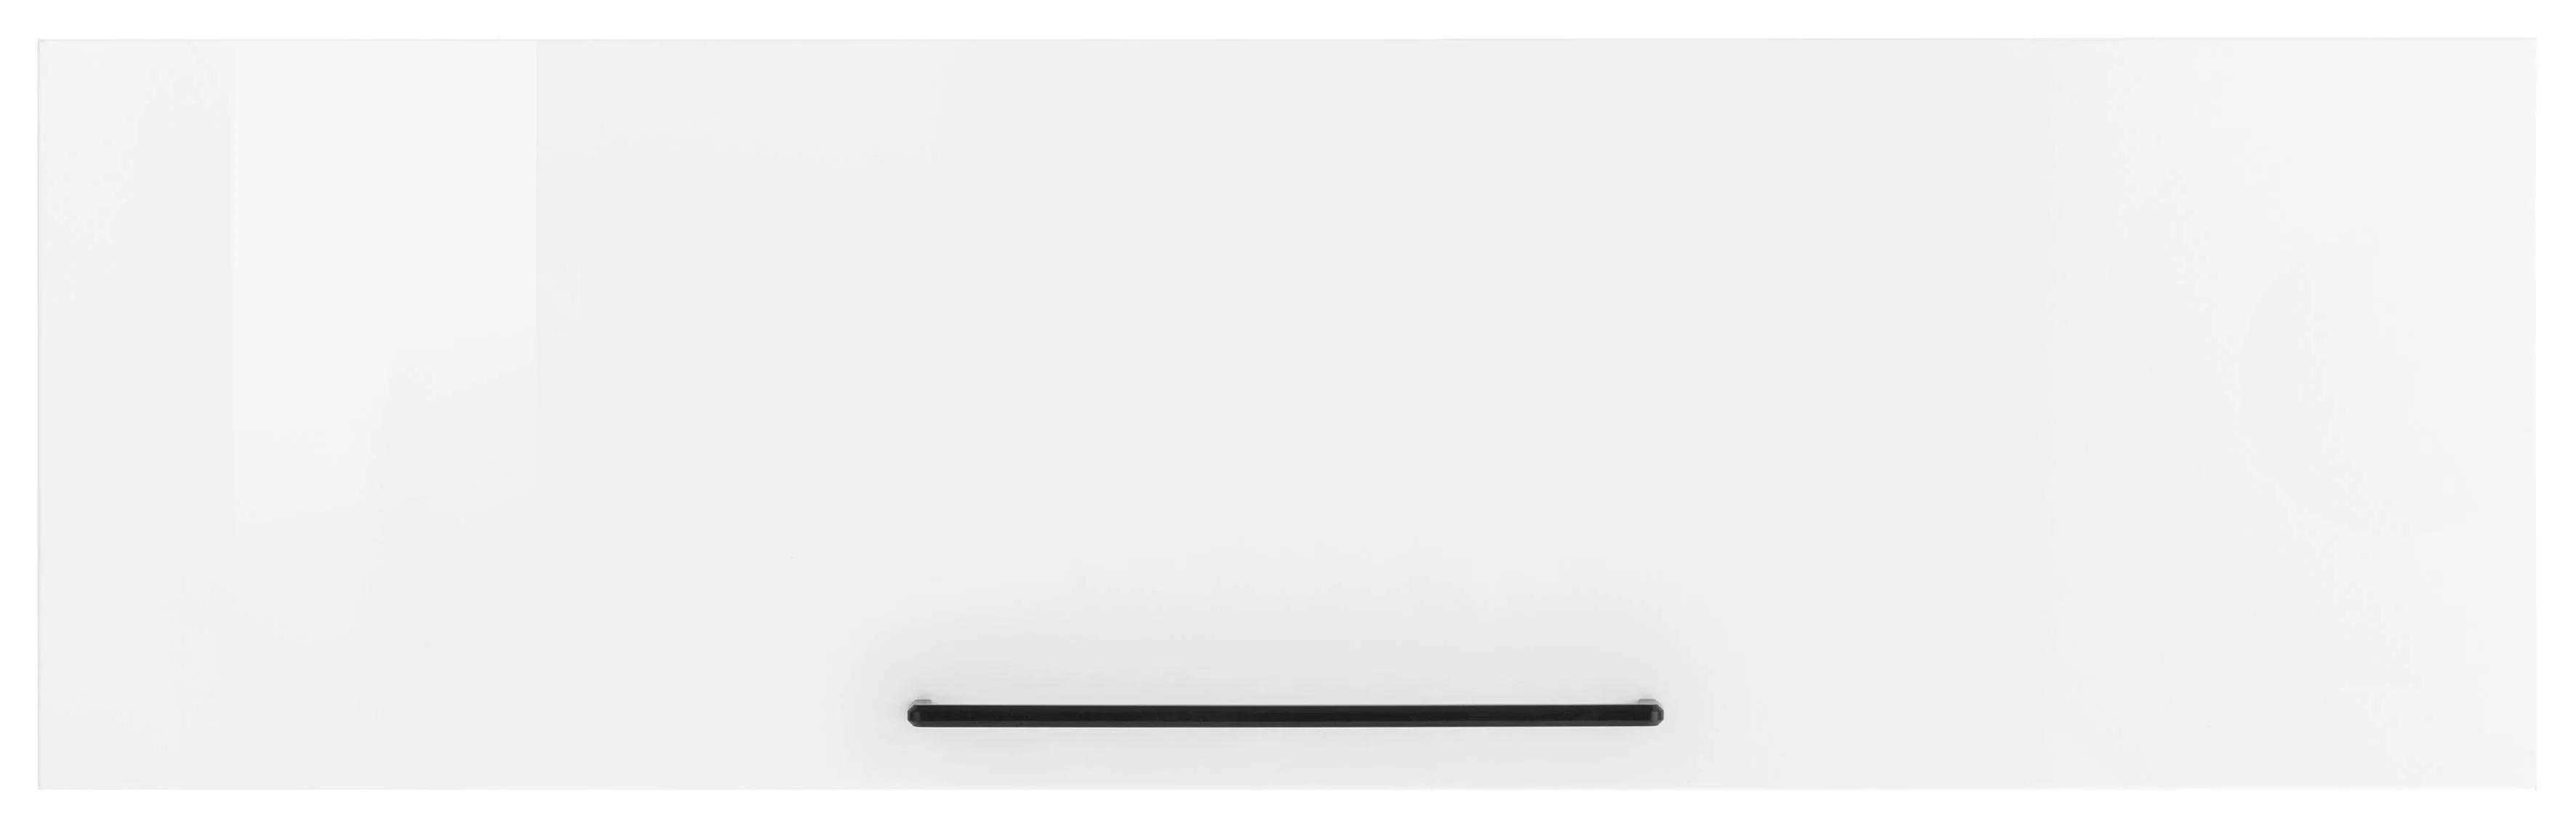 HELD MÖBEL Klapphängeschrank "Tulsa", 110 cm breit, mit 1 Klappe, schwarzer günstig online kaufen